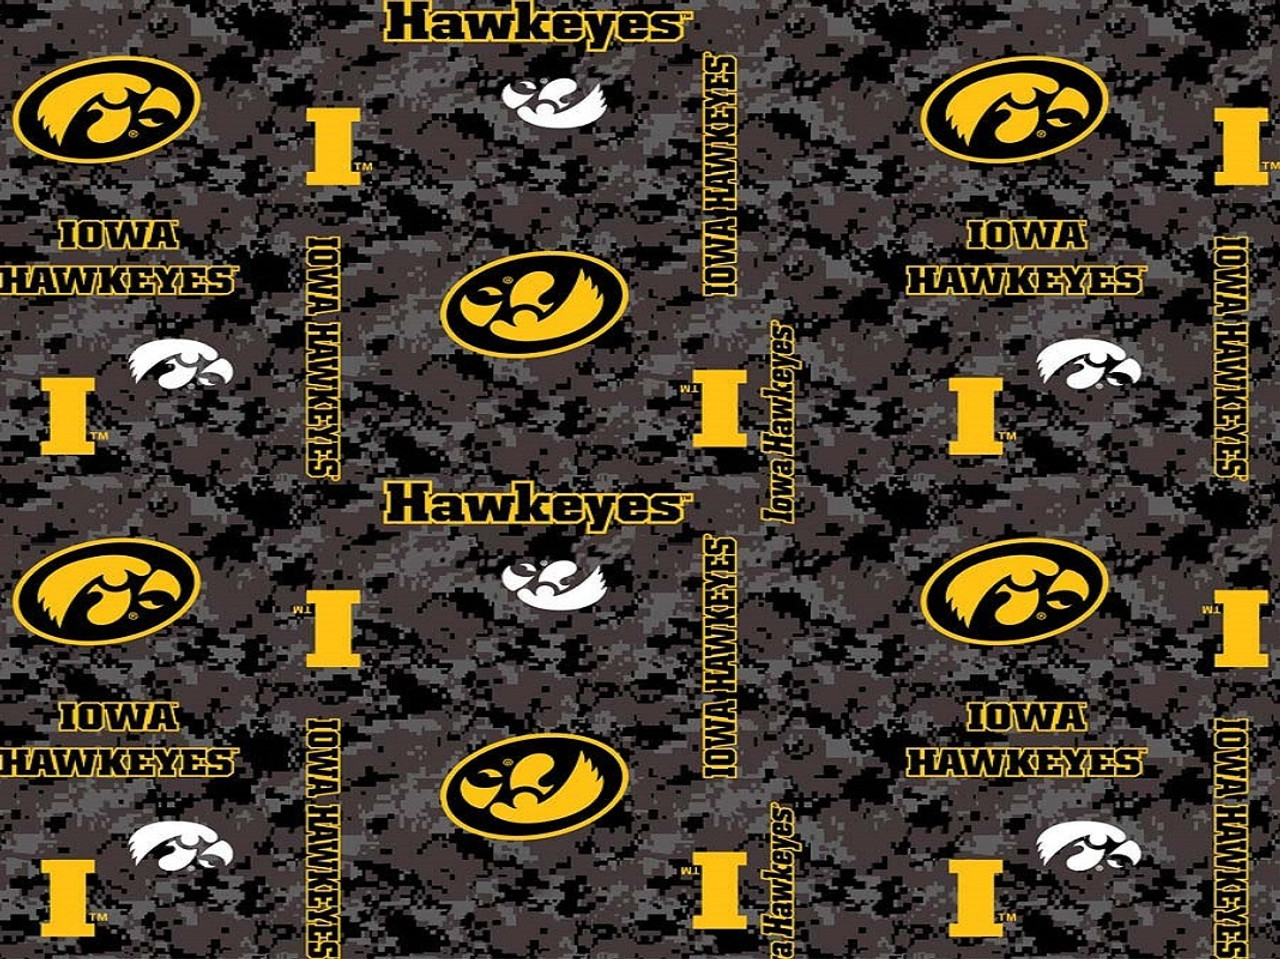 University of Iowa Hawkeyes Heather Grey Fleece Fabric Remnants